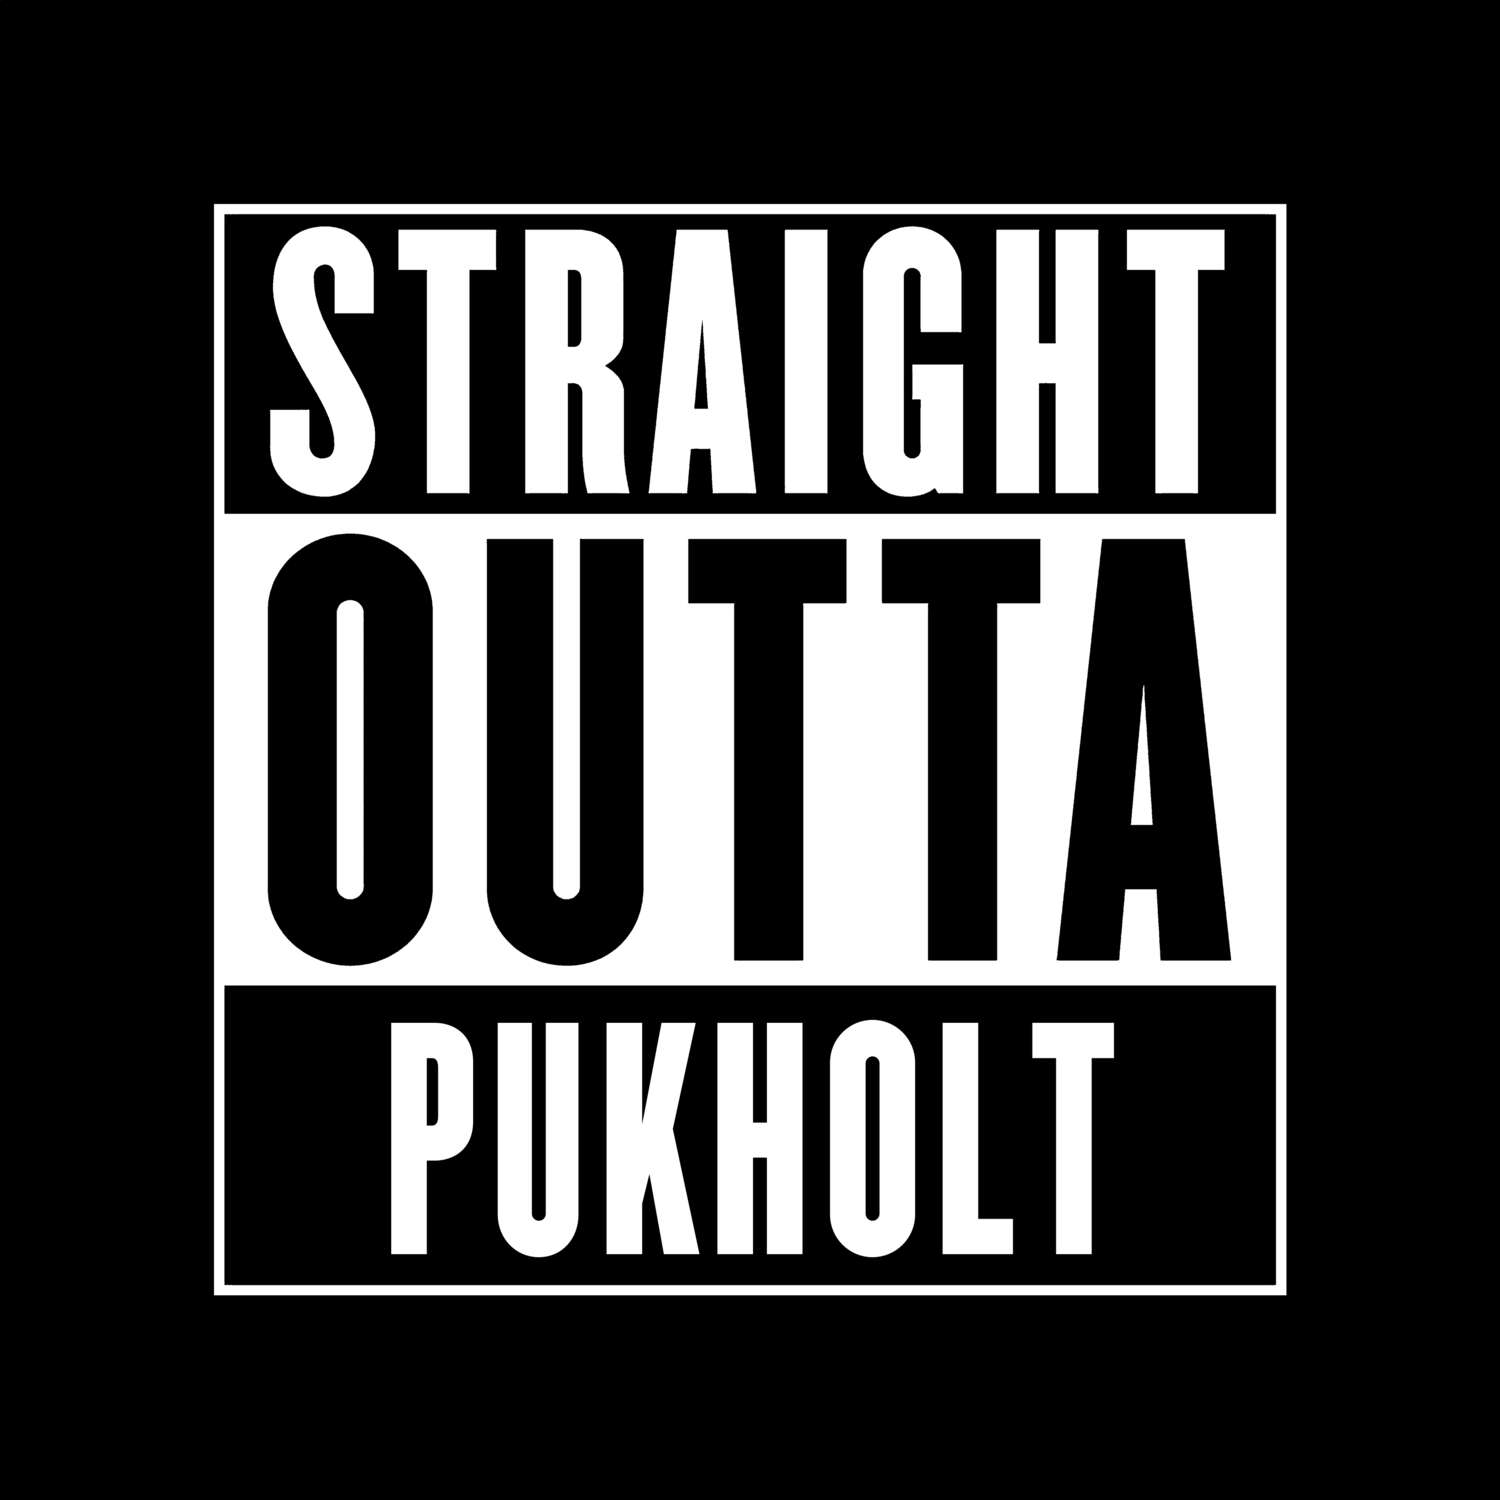 Pukholt T-Shirt »Straight Outta«